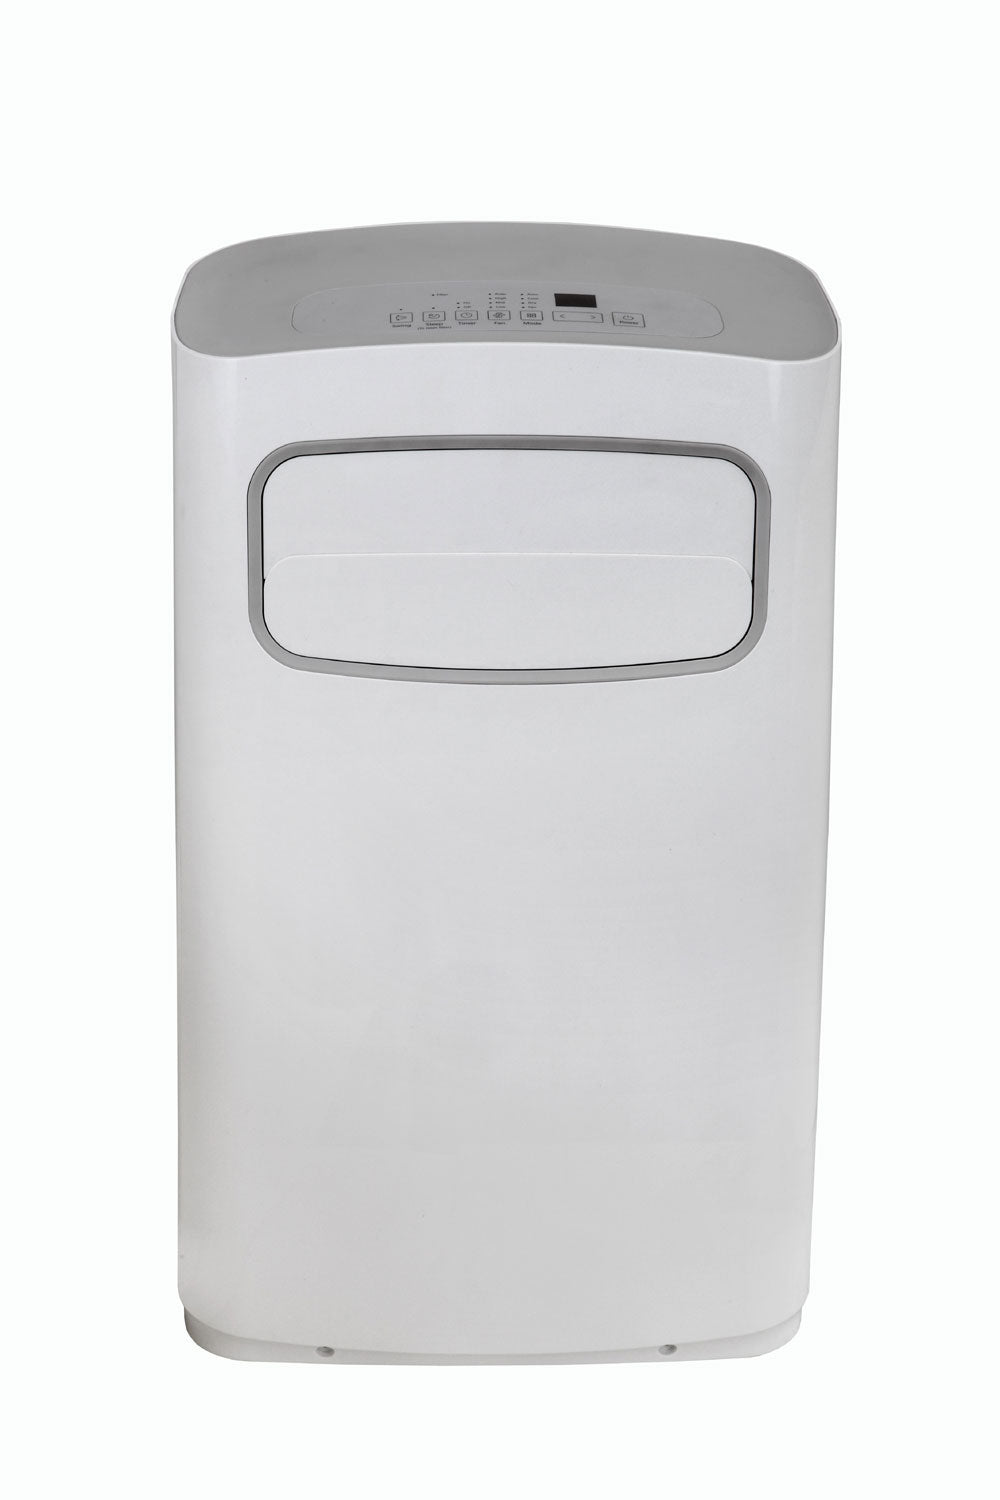 SPT 14,000 BTU Portable Air Conditioner 